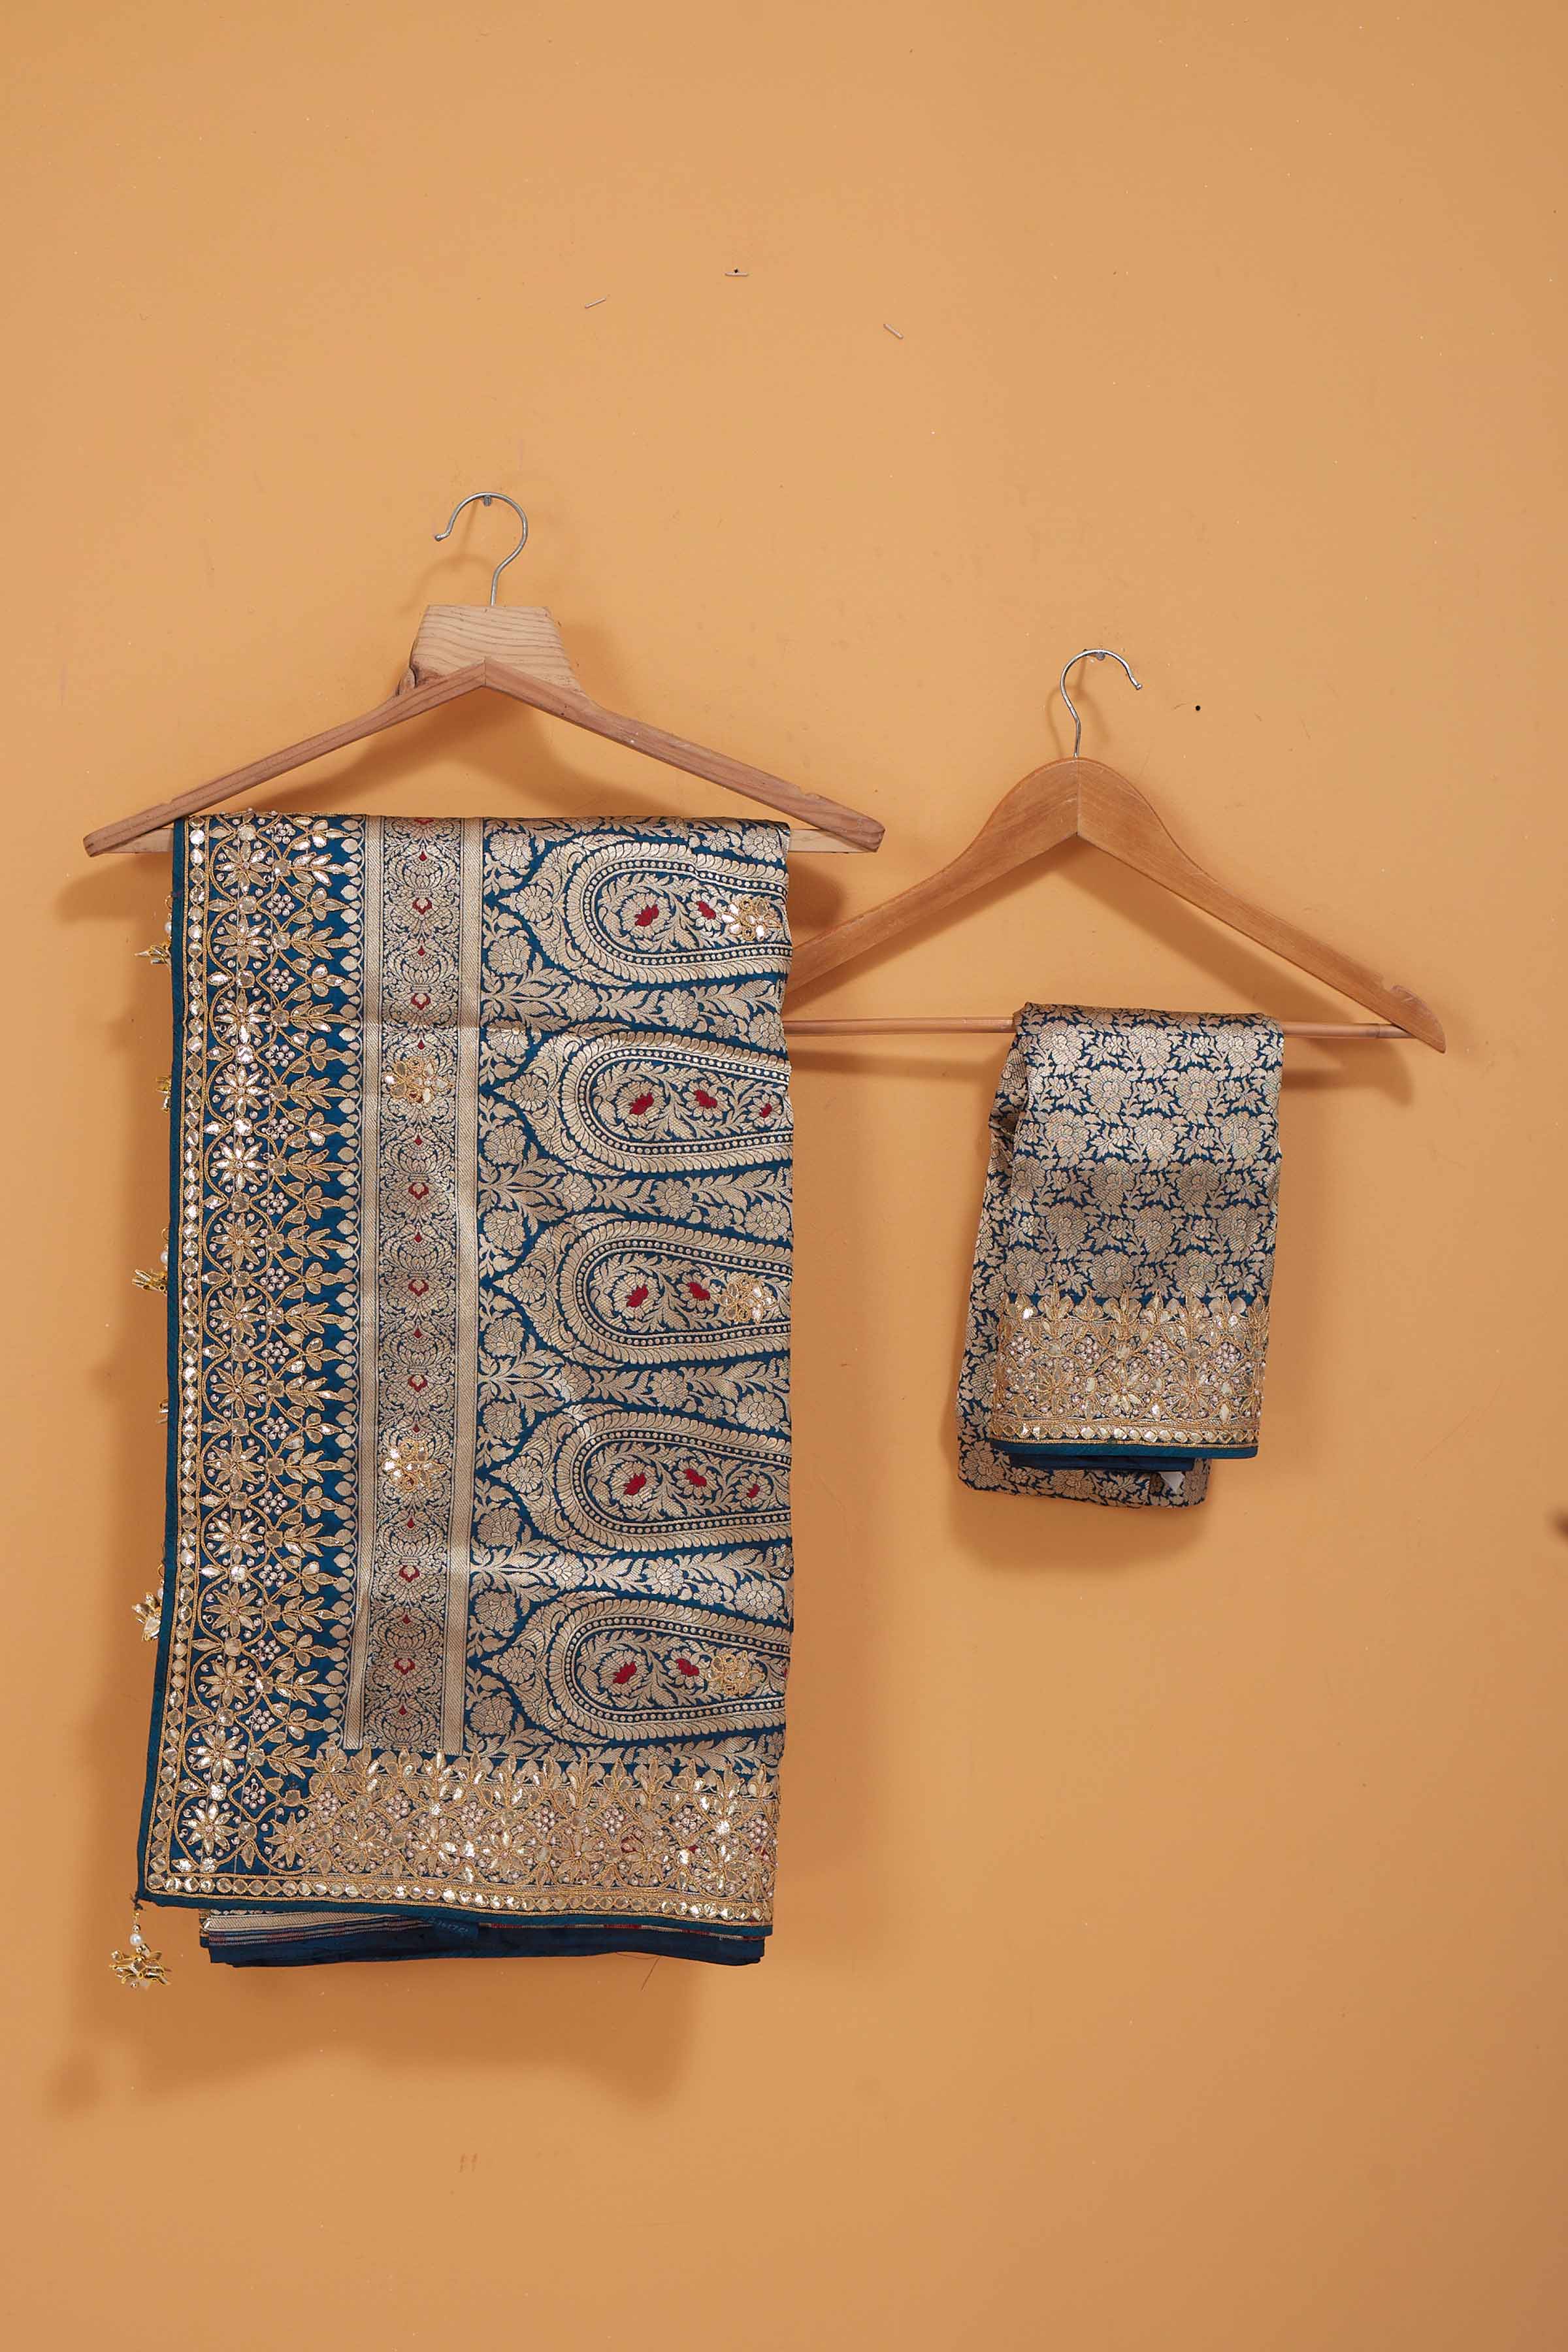 Buy sea blue Banarasi silk sari online in USA with zari minakari work. Look royal at weddings and festive occasions in exquisite designer sarees, handwoven sarees, pure silk saris, Banarasi sarees, Kanchipuram silk sarees from Pure Elegance Indian saree store in USA. -blouse